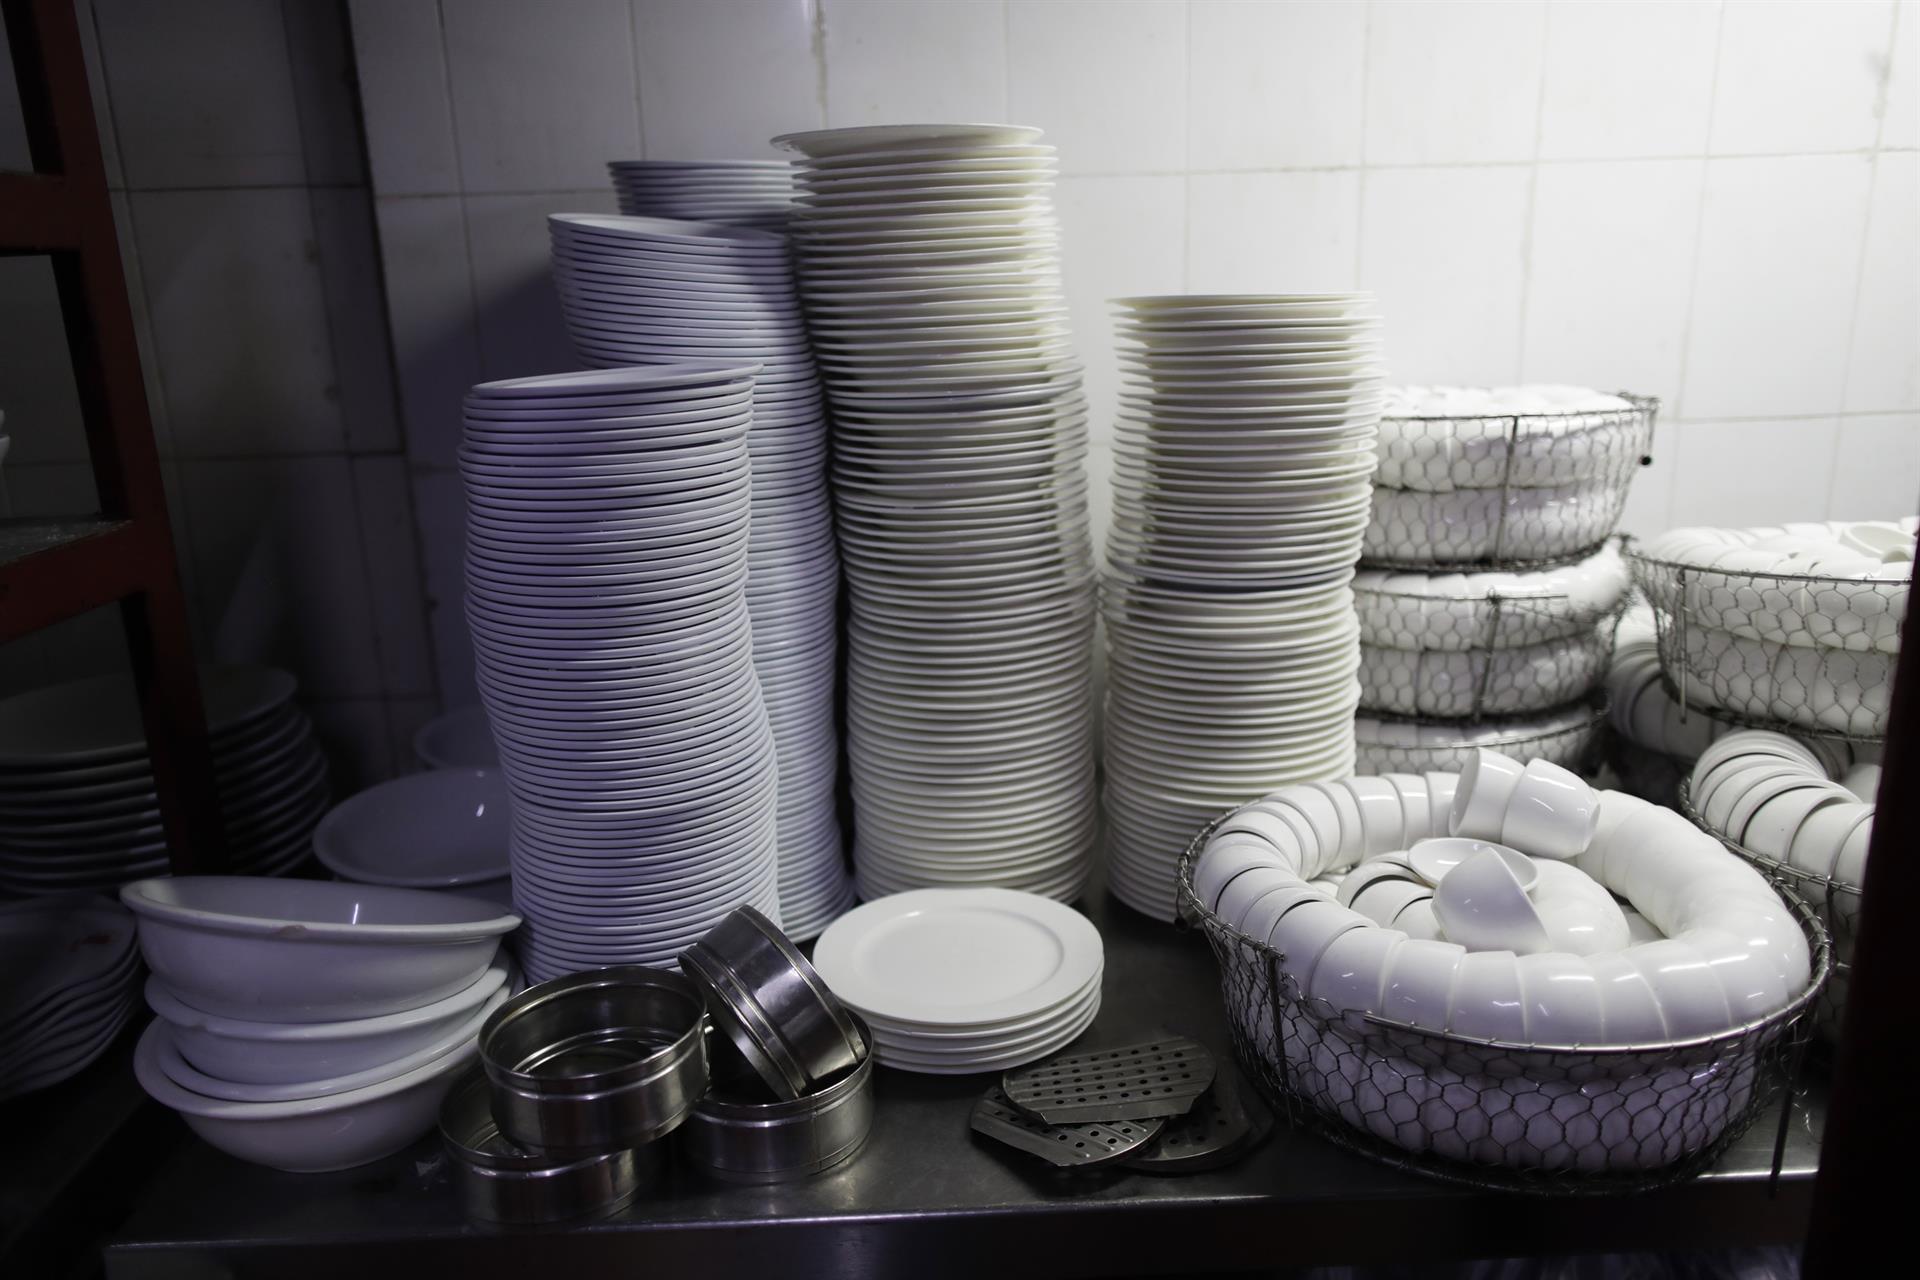 “Habilidades para la vida”: escolares chinos aprenderán cocina y limpieza